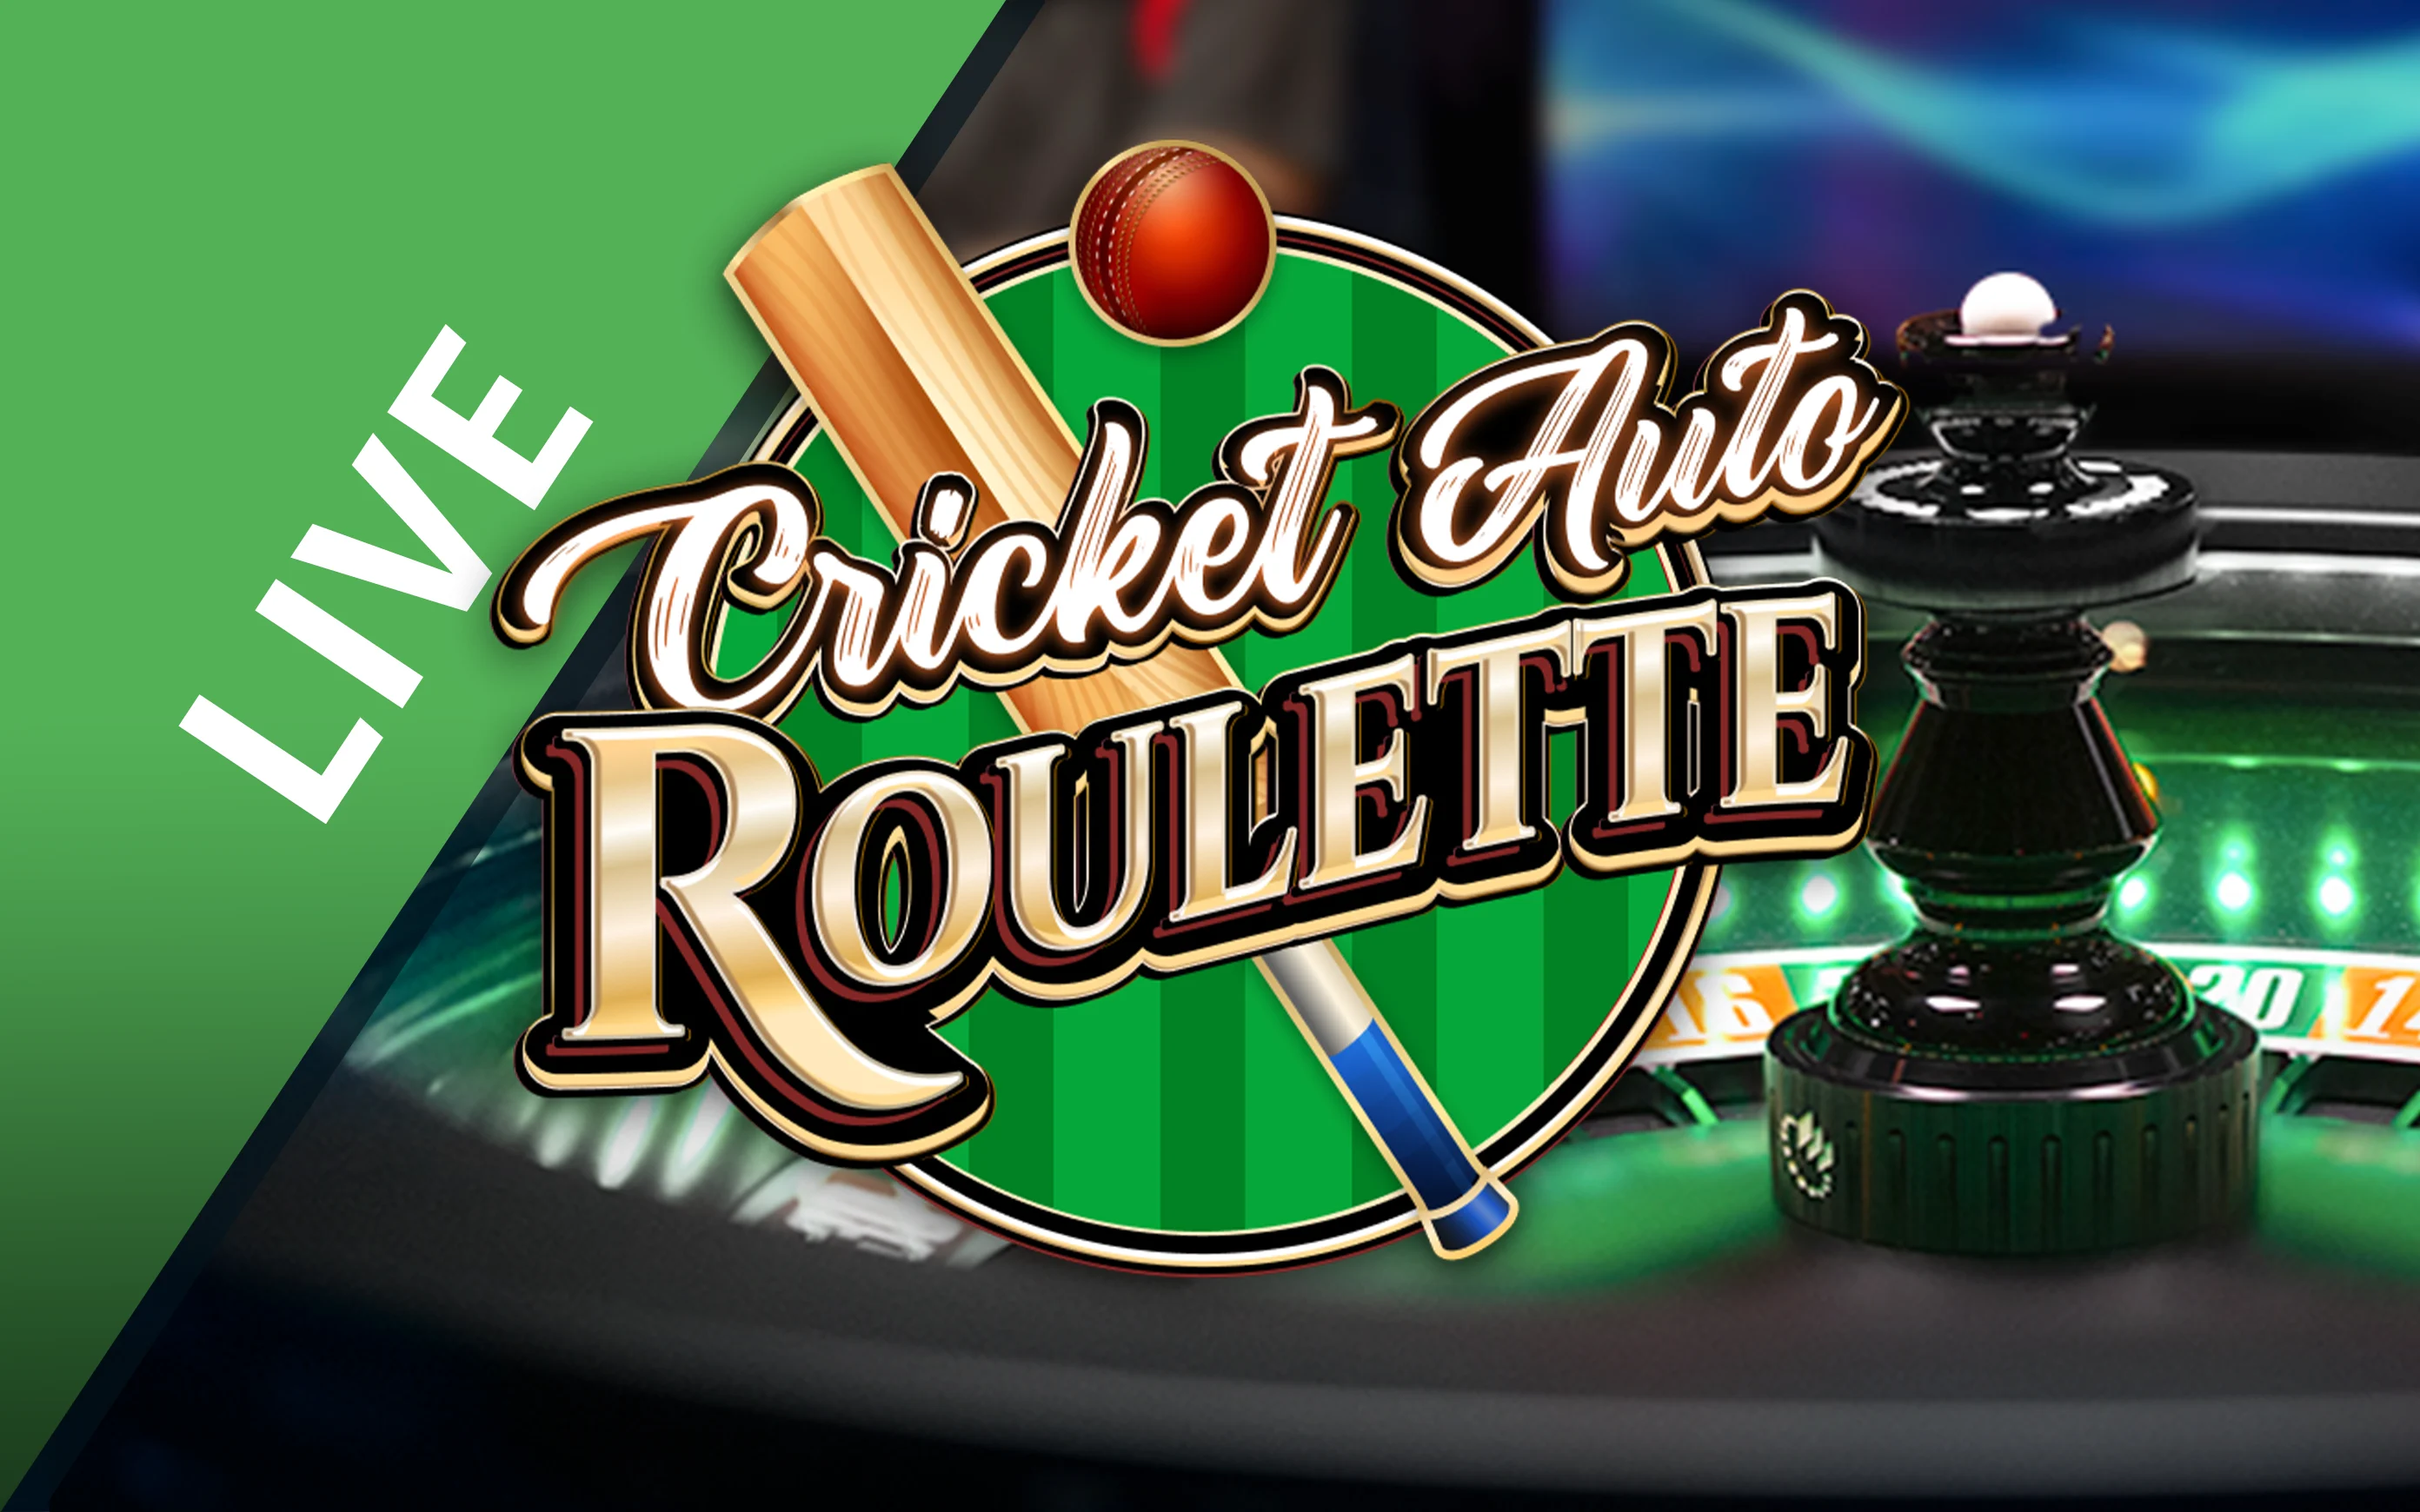 Gioca a Cricket Auto Roulette sul casino online Starcasino.be